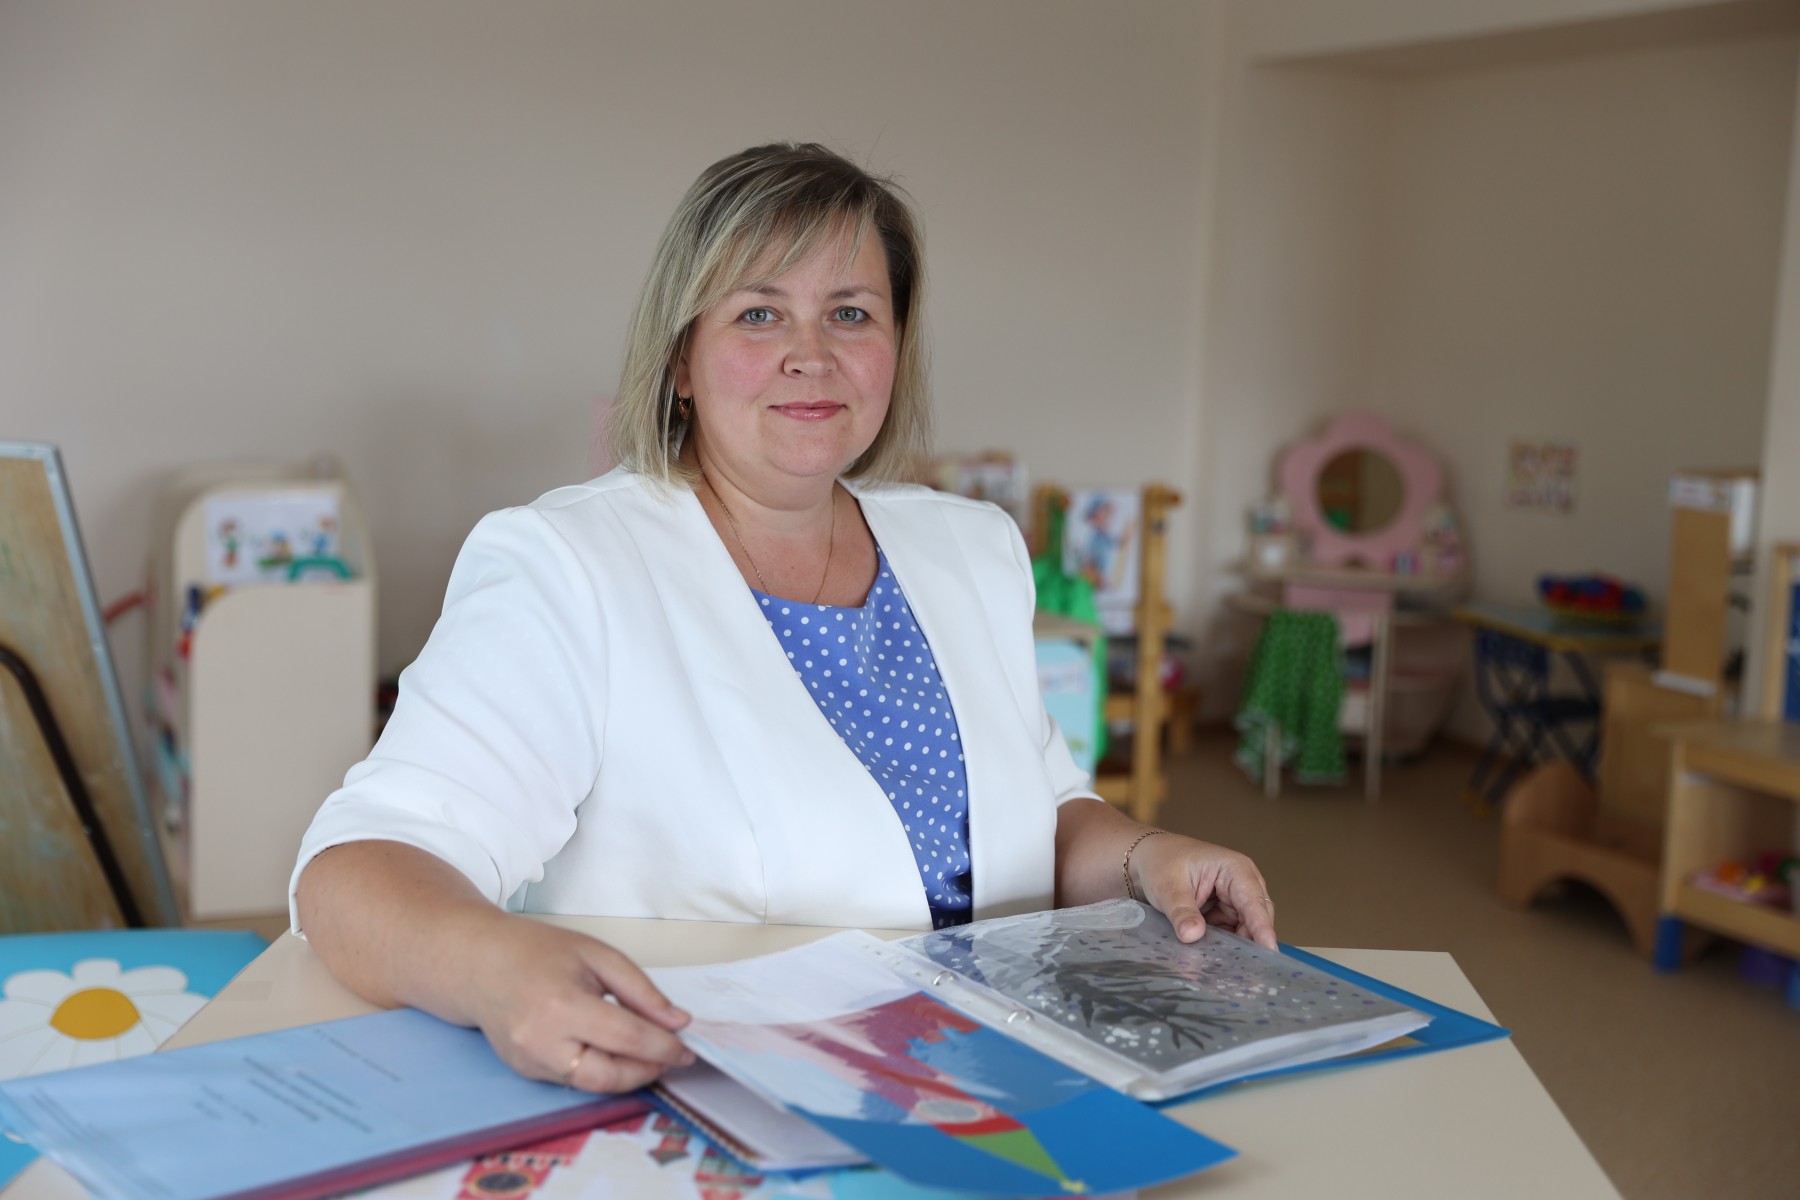 Ульяна Целищева: "Работать в детском саду мне понравилось больше, чем в школе". Фото Владимира Коцюбы-Белых